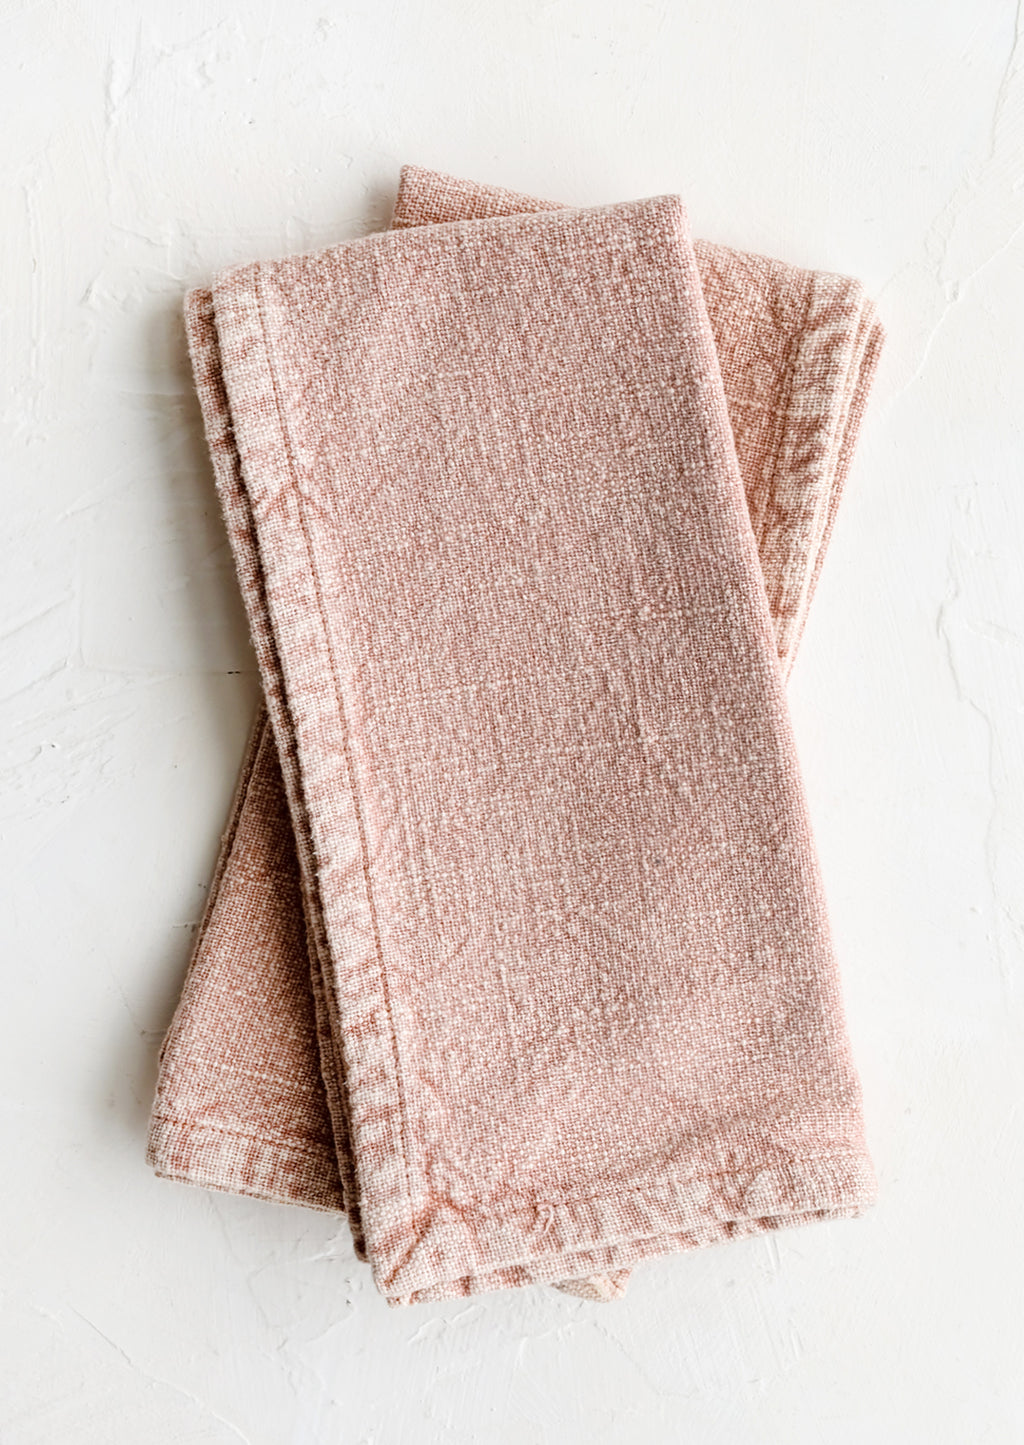 Rose: A pair of stonewashed napkins in rose pink.